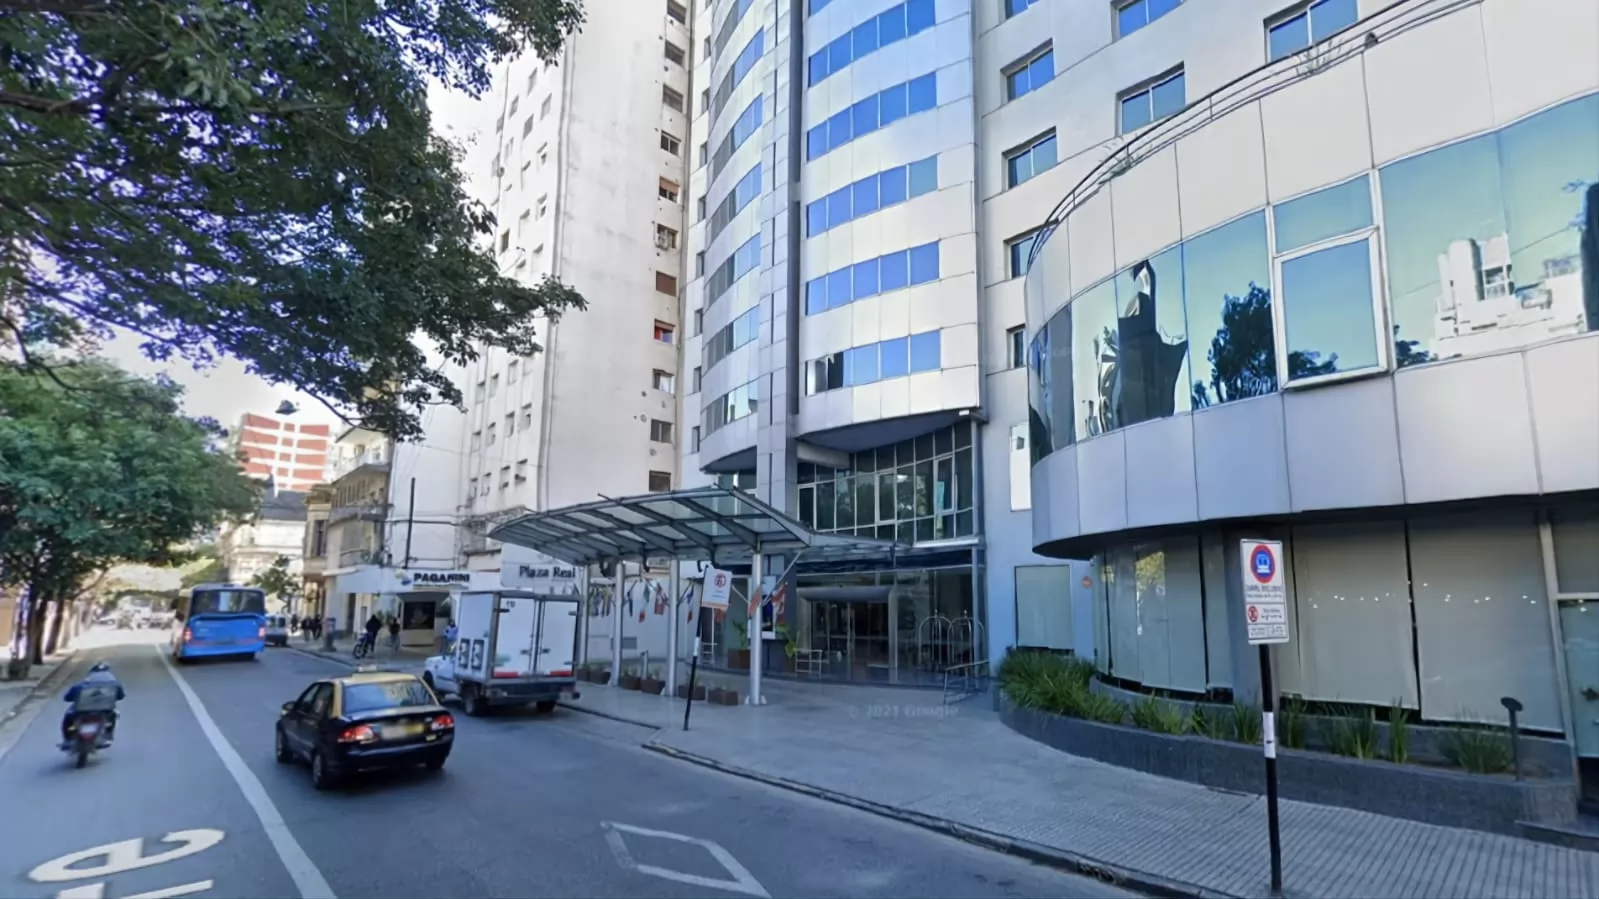 Femicidio en hotel céntrico de Rosario: prisión preventiva para la pareja de la víctima